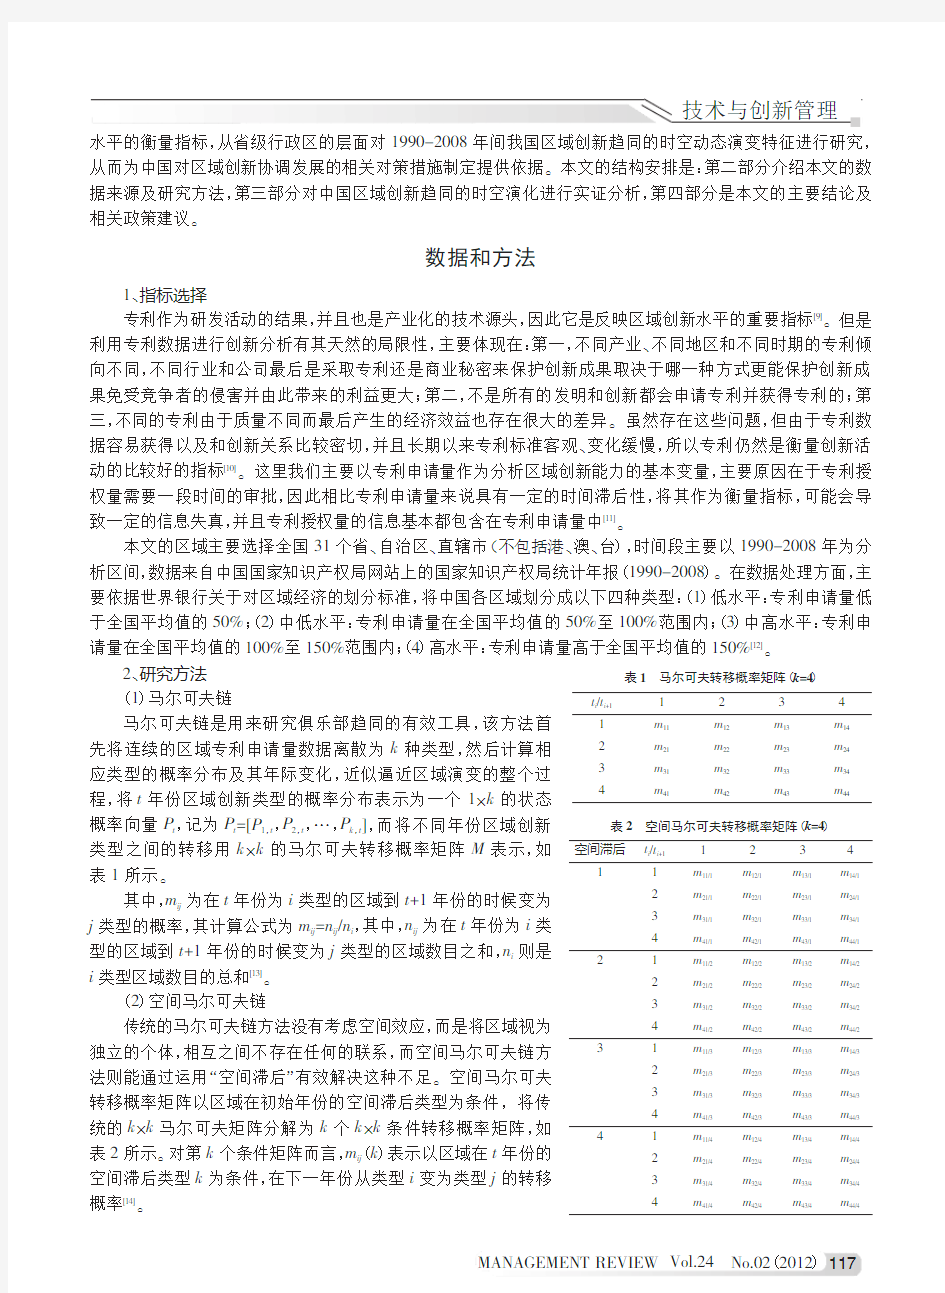 基于专利指标的中国区域创新趋同的时空演变特征分析_潘雄锋